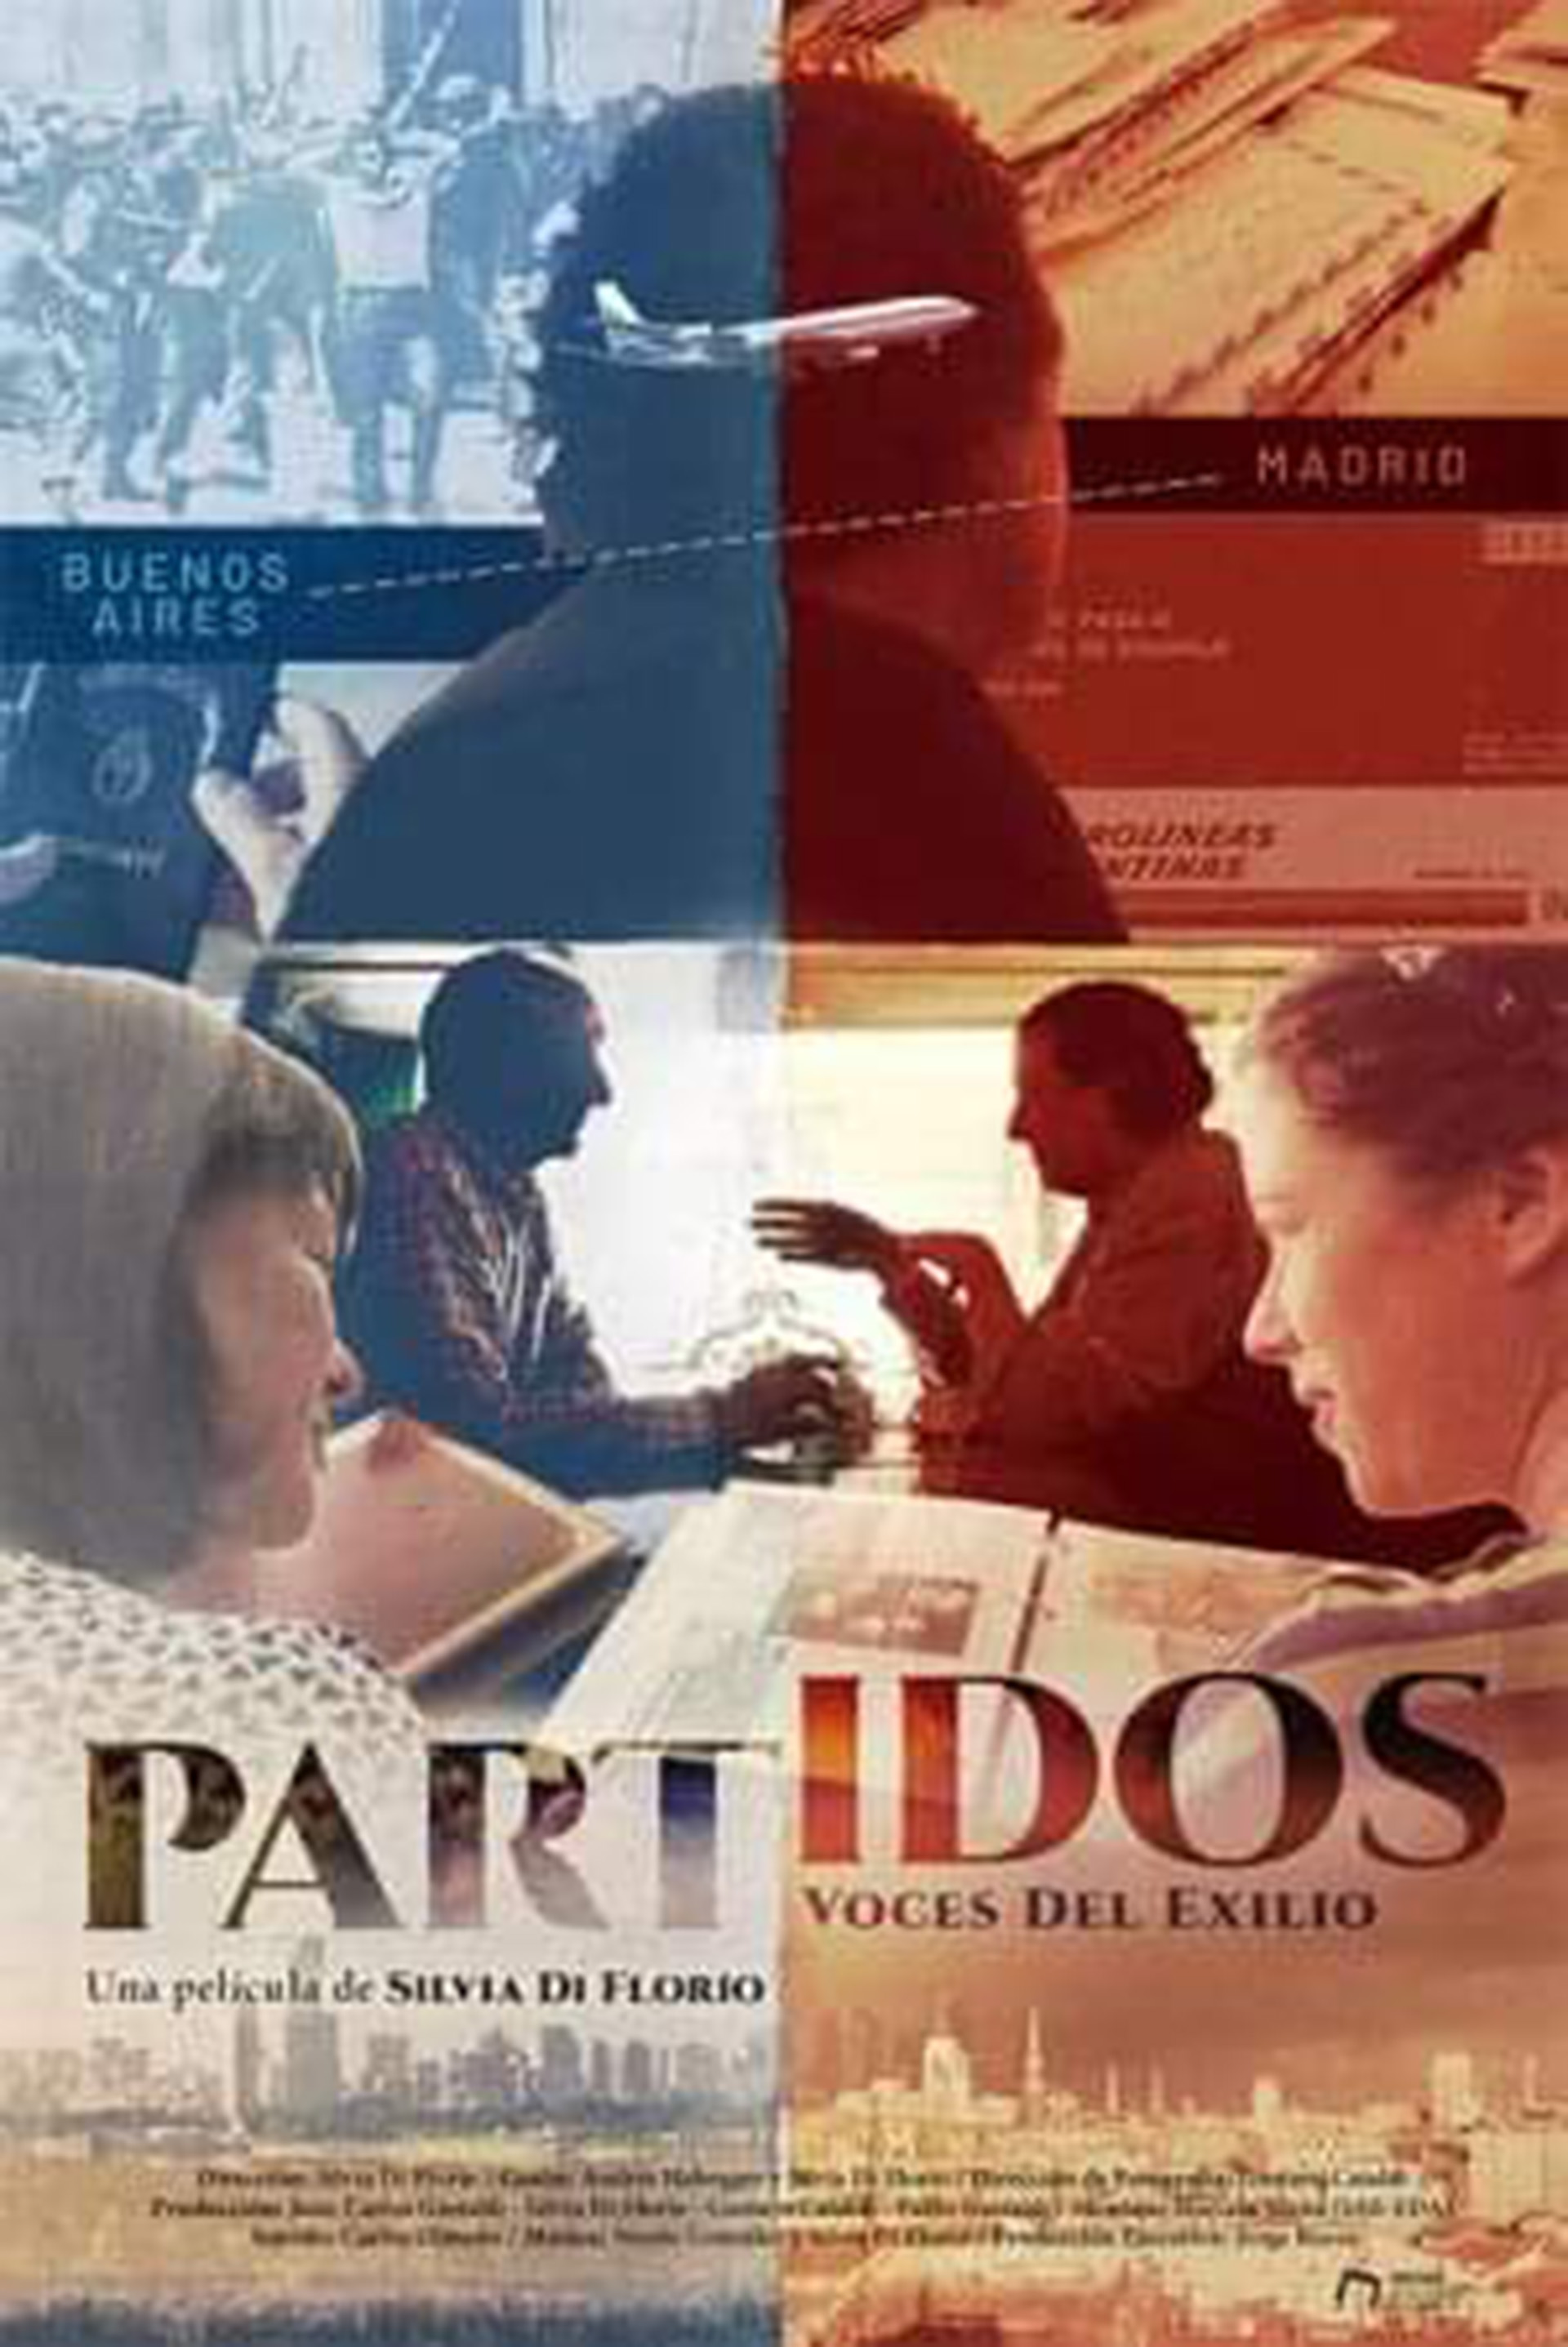 Partidos, voces del exilio. El documental de Silvia Di Florio, filmado en Madrid